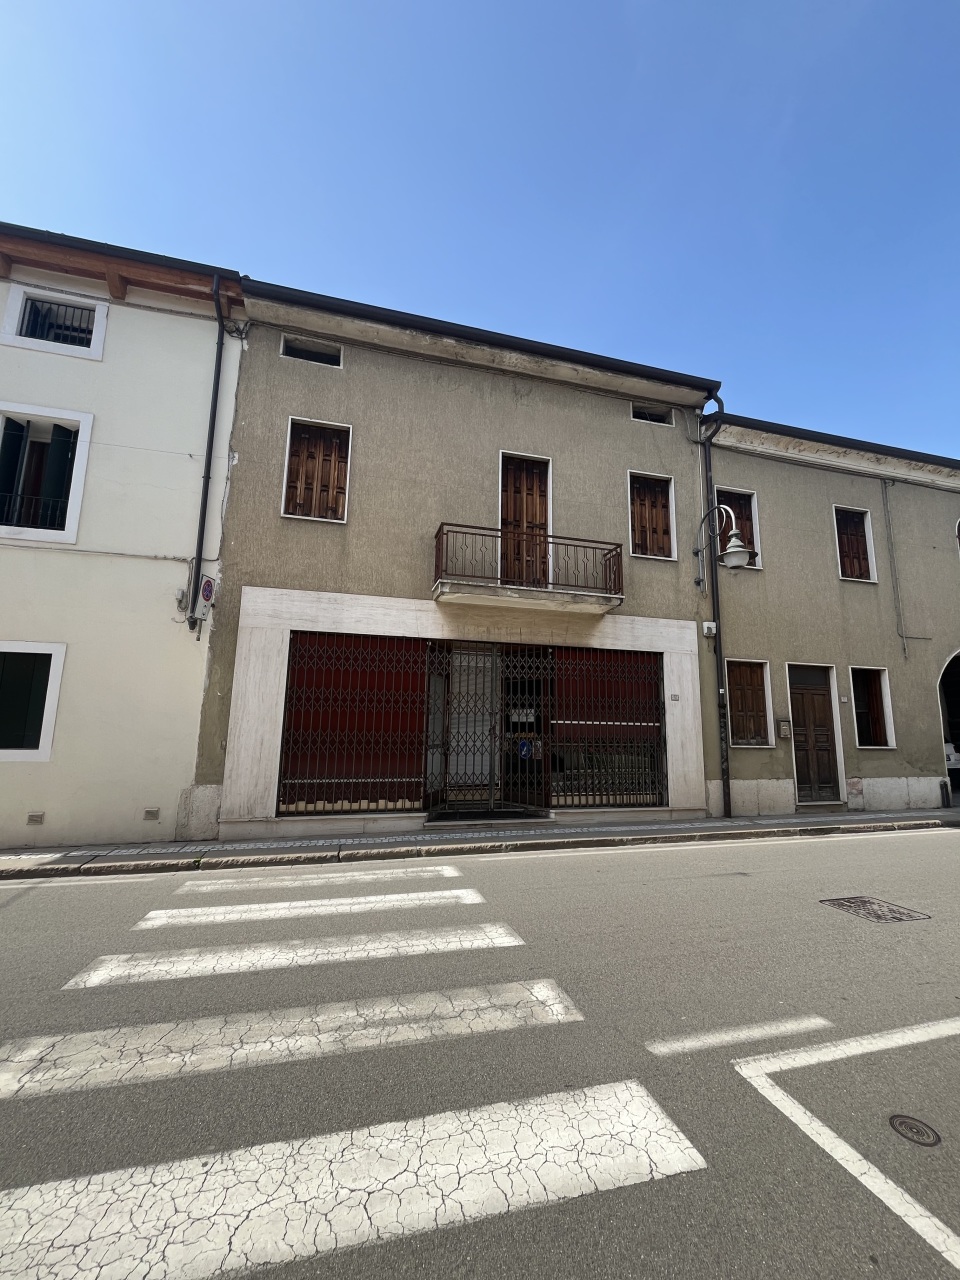 Attività / Licenza in affitto a Montebello Vicentino, 4 locali, prezzo € 1.000 | PortaleAgenzieImmobiliari.it